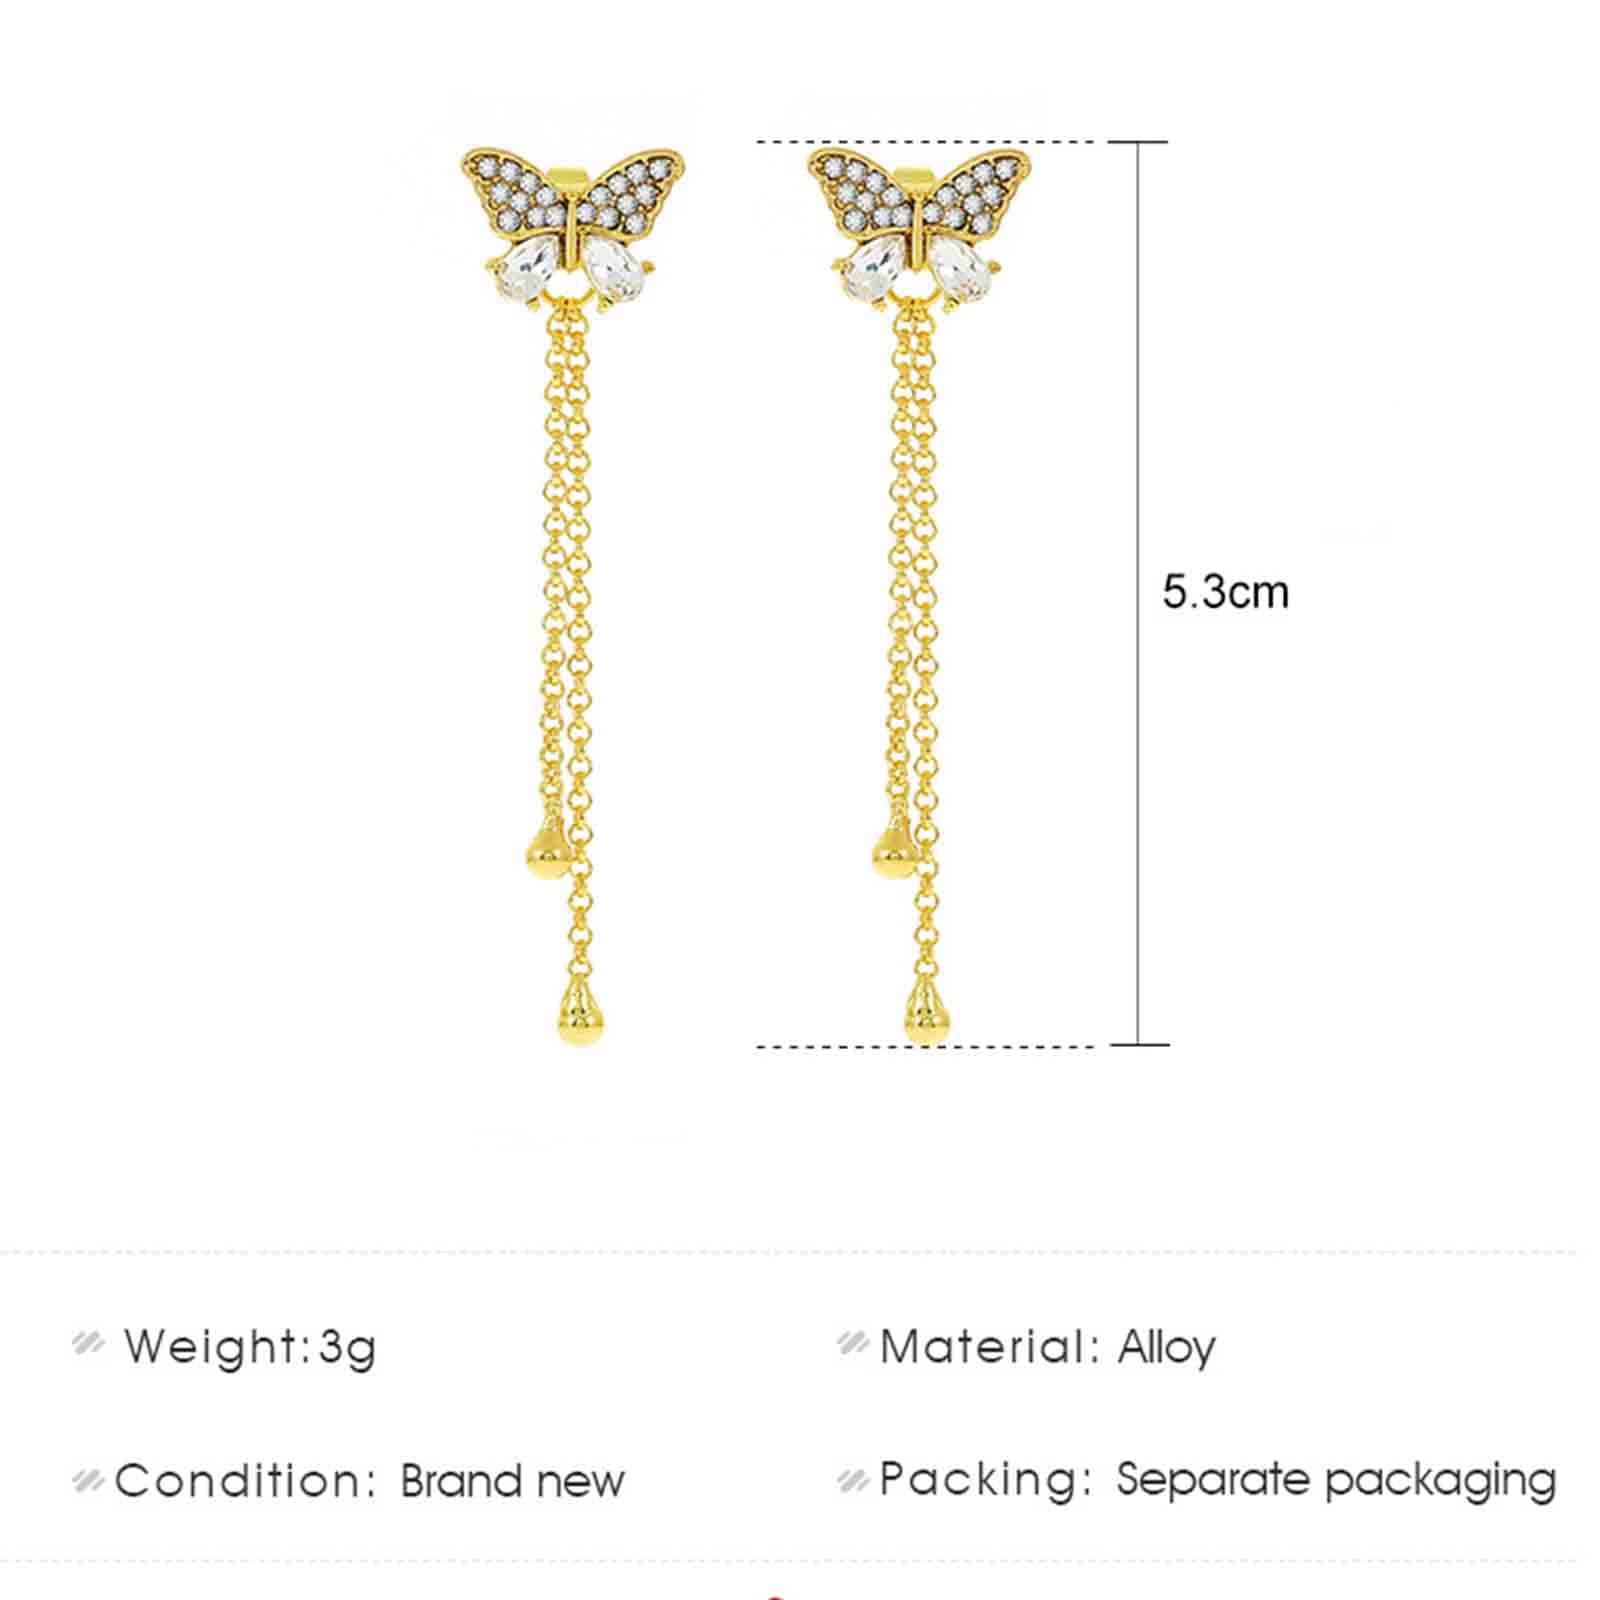 Yheakne Vintage Crystal Butterfly Stud Earrings Gold Long Chain Earrings Thin Drop Chain Earrings Cz Paved Butterfly Earrings Retro Hanging Chain Earrings Jewelry for Women and Girls